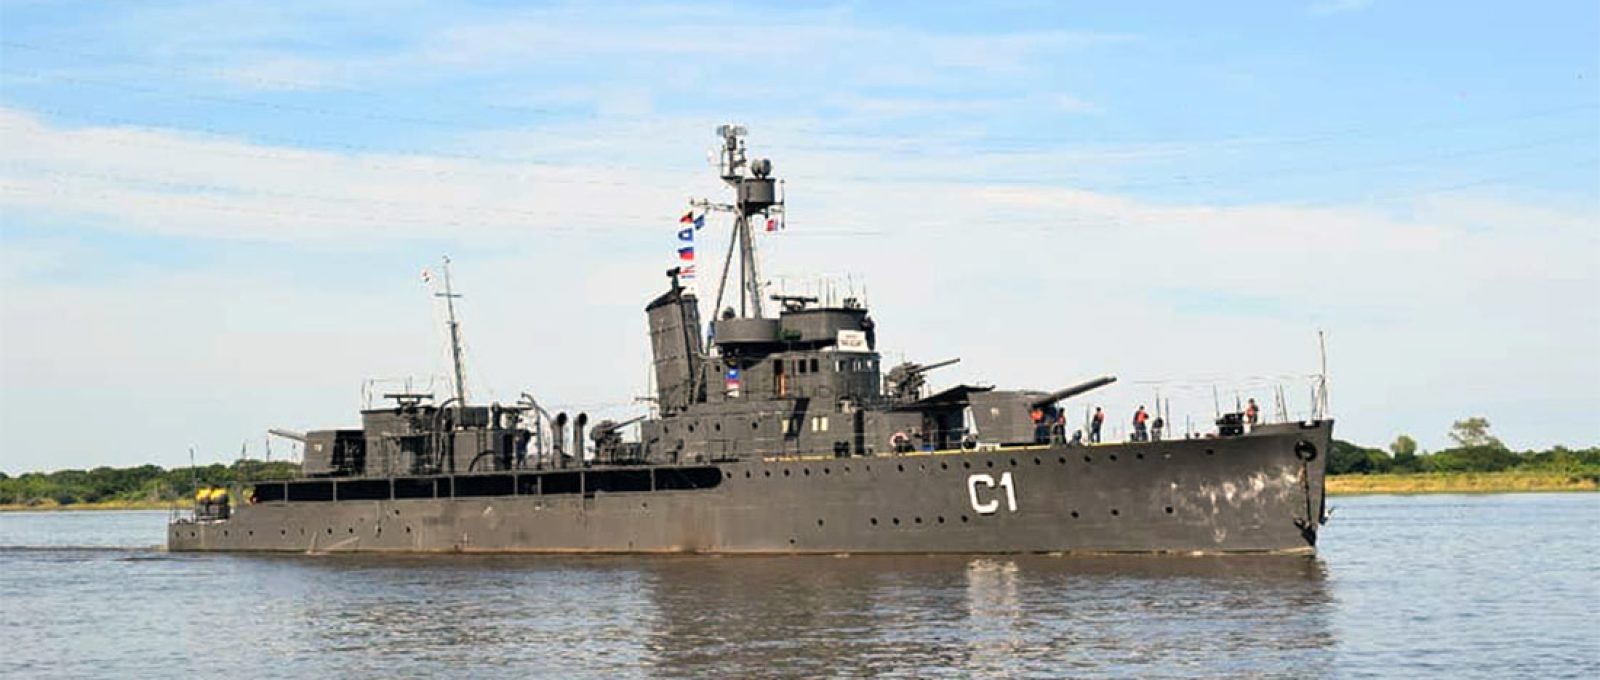 Canhoneira classe Humaitá (“cañonera”) ARP Paraguai, da Marinha paraguaia, em 2020 (Zona Militar).